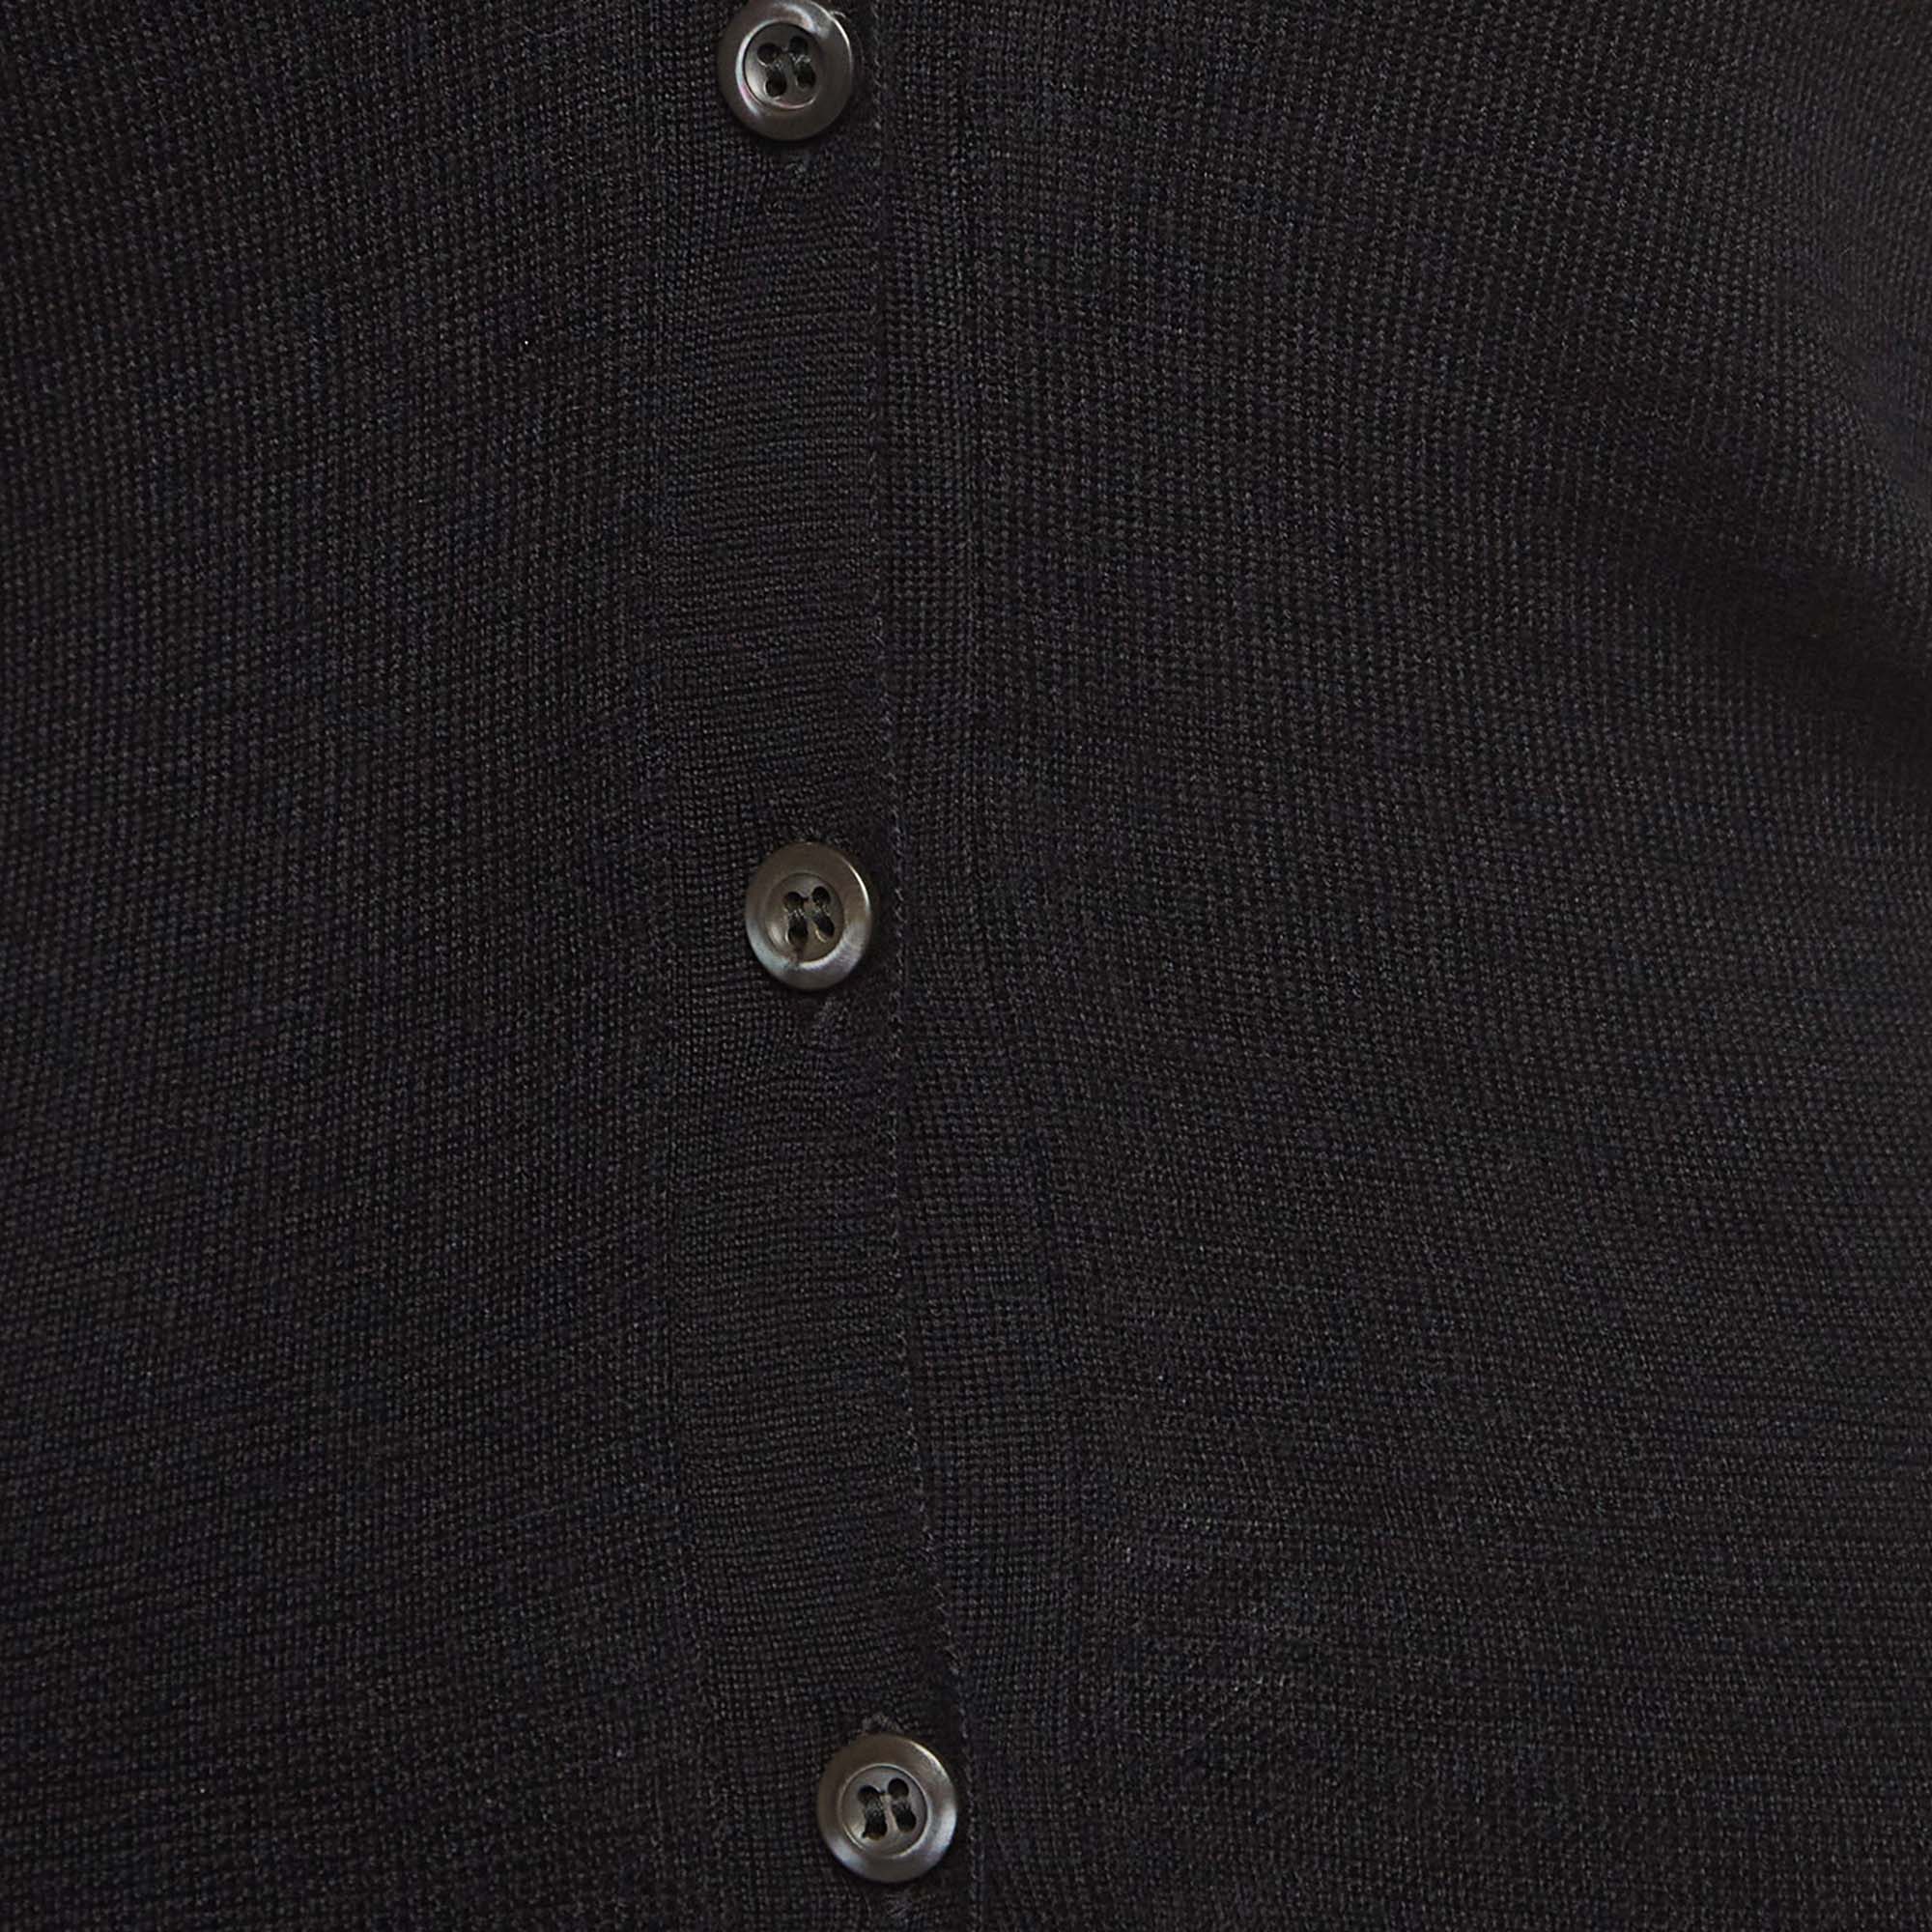 Prada Black Cashmere And Silk Buttoned Cardigan S